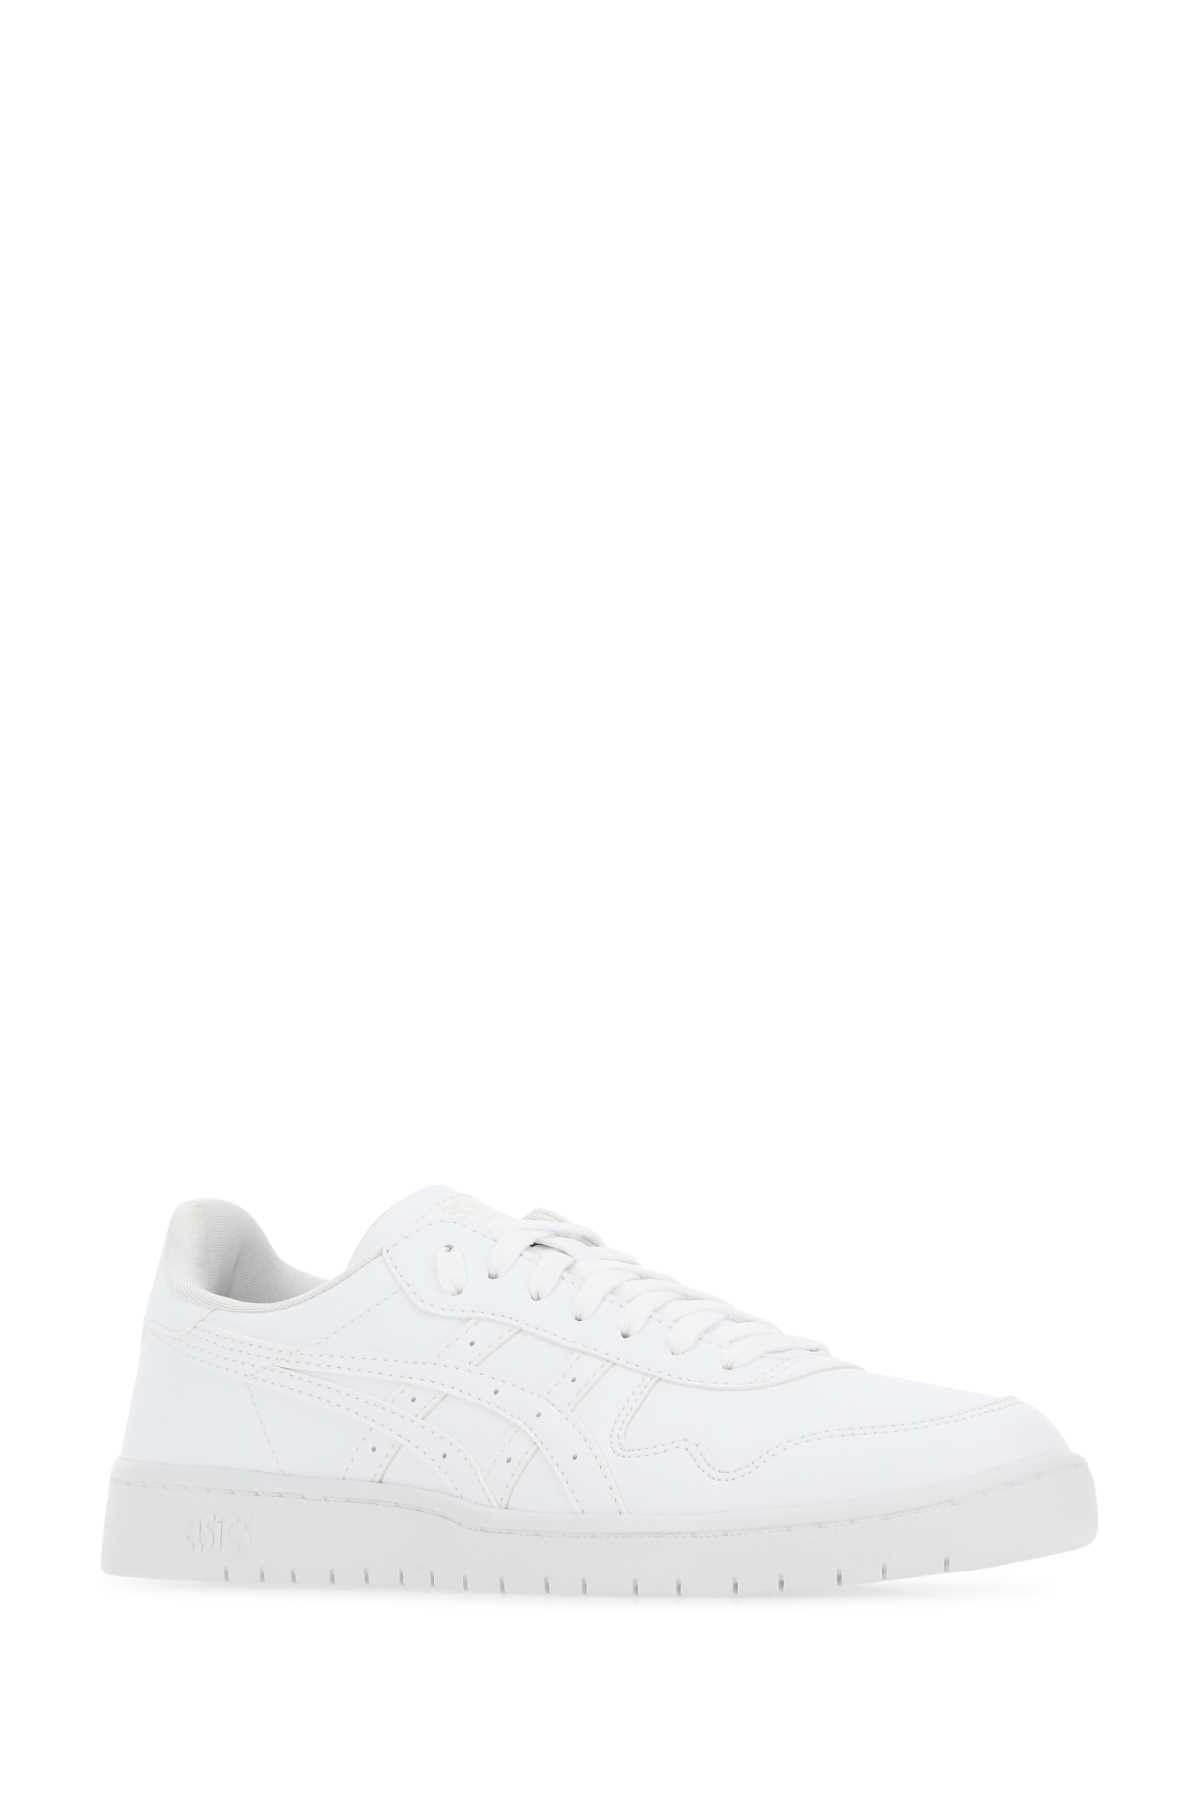 Comme Des Garçons Shirt White Leather Japan Sneakers